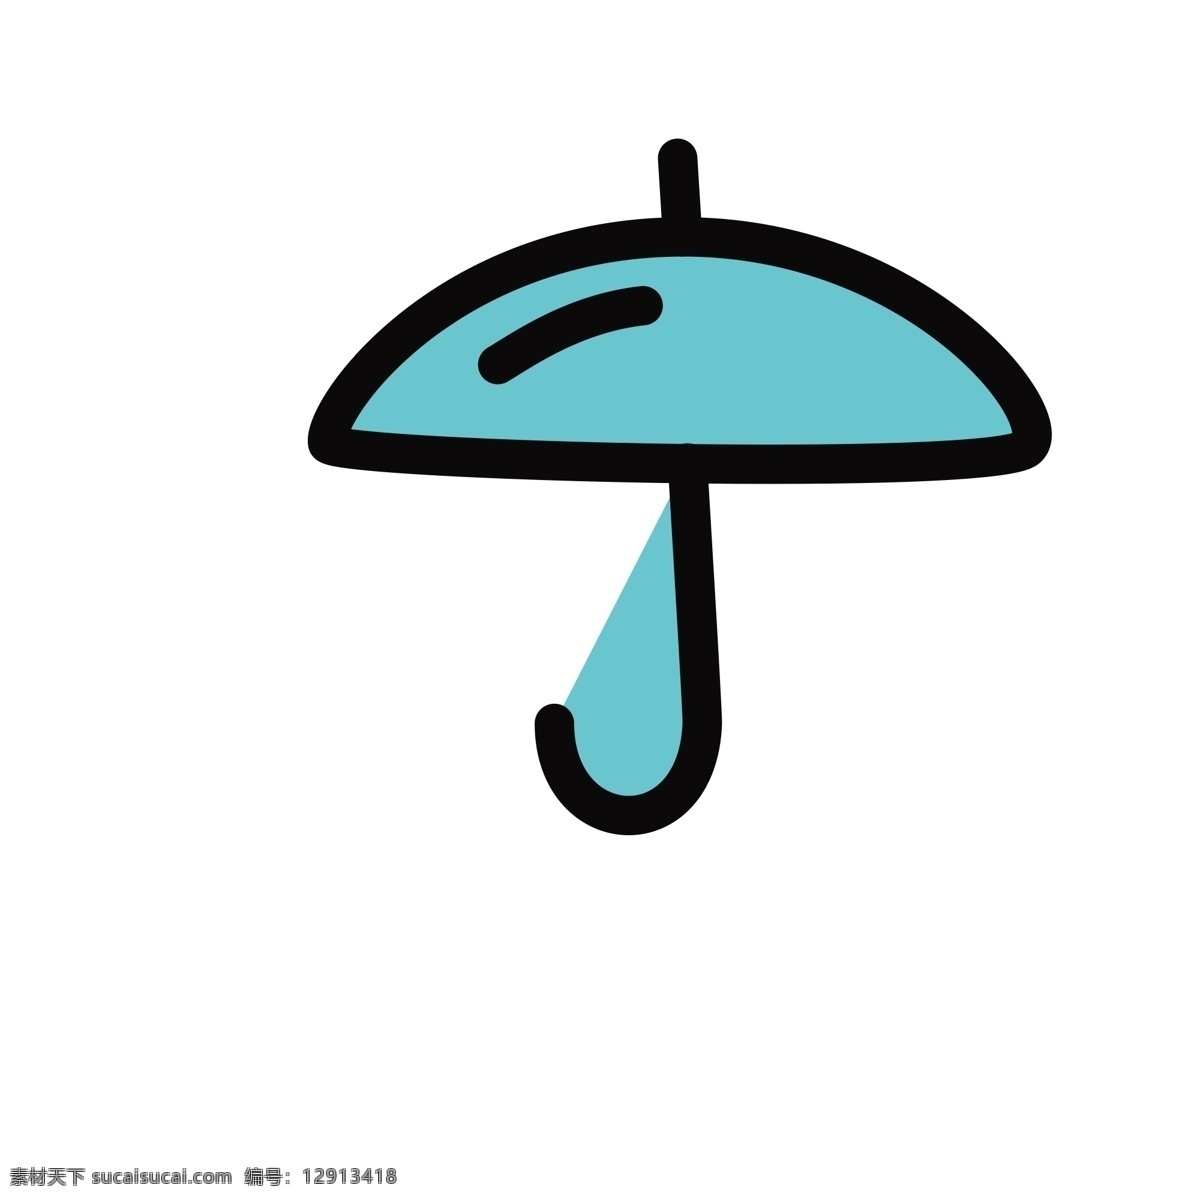 卡通 雨伞 图标 防潮 防水 扁平化ui ui图标 手机图标 游戏ui 界面ui 网页ui h5图标